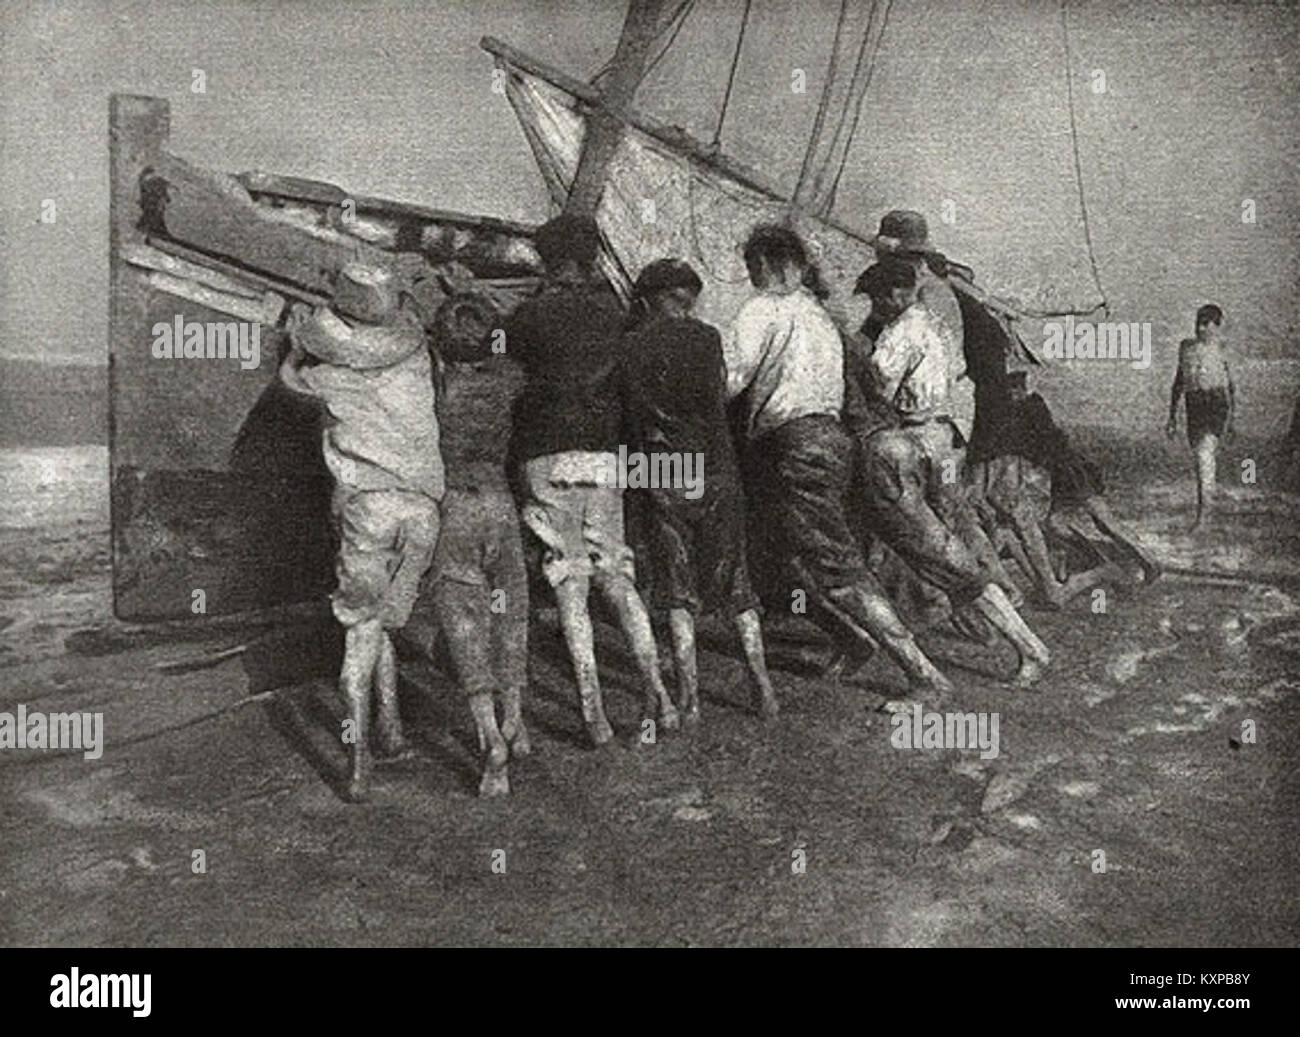 CW11-09 - Robert Demachy, L'Effort, 1905 Stock Photo